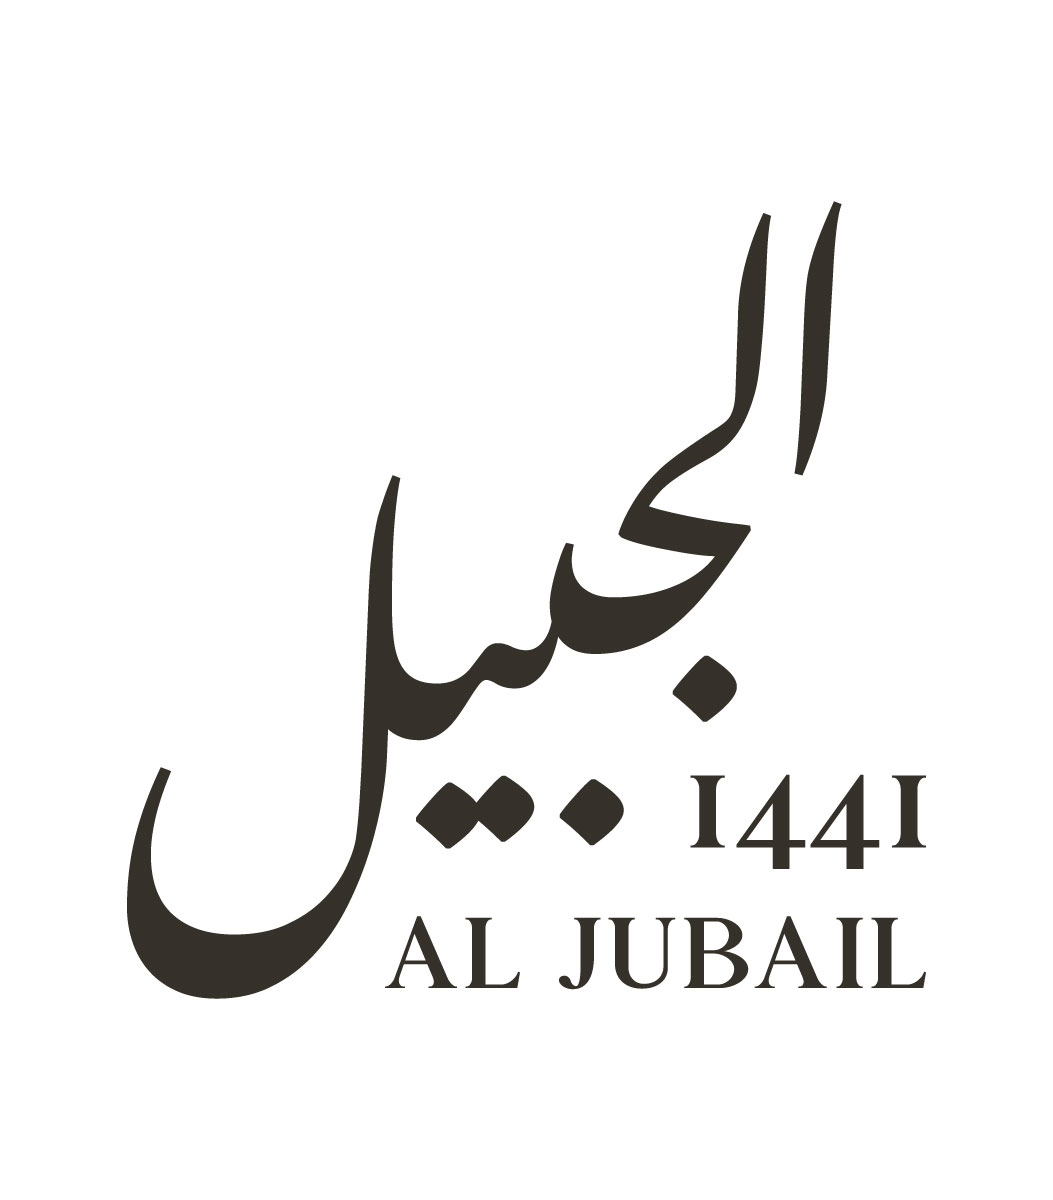 Al Jubail 1441